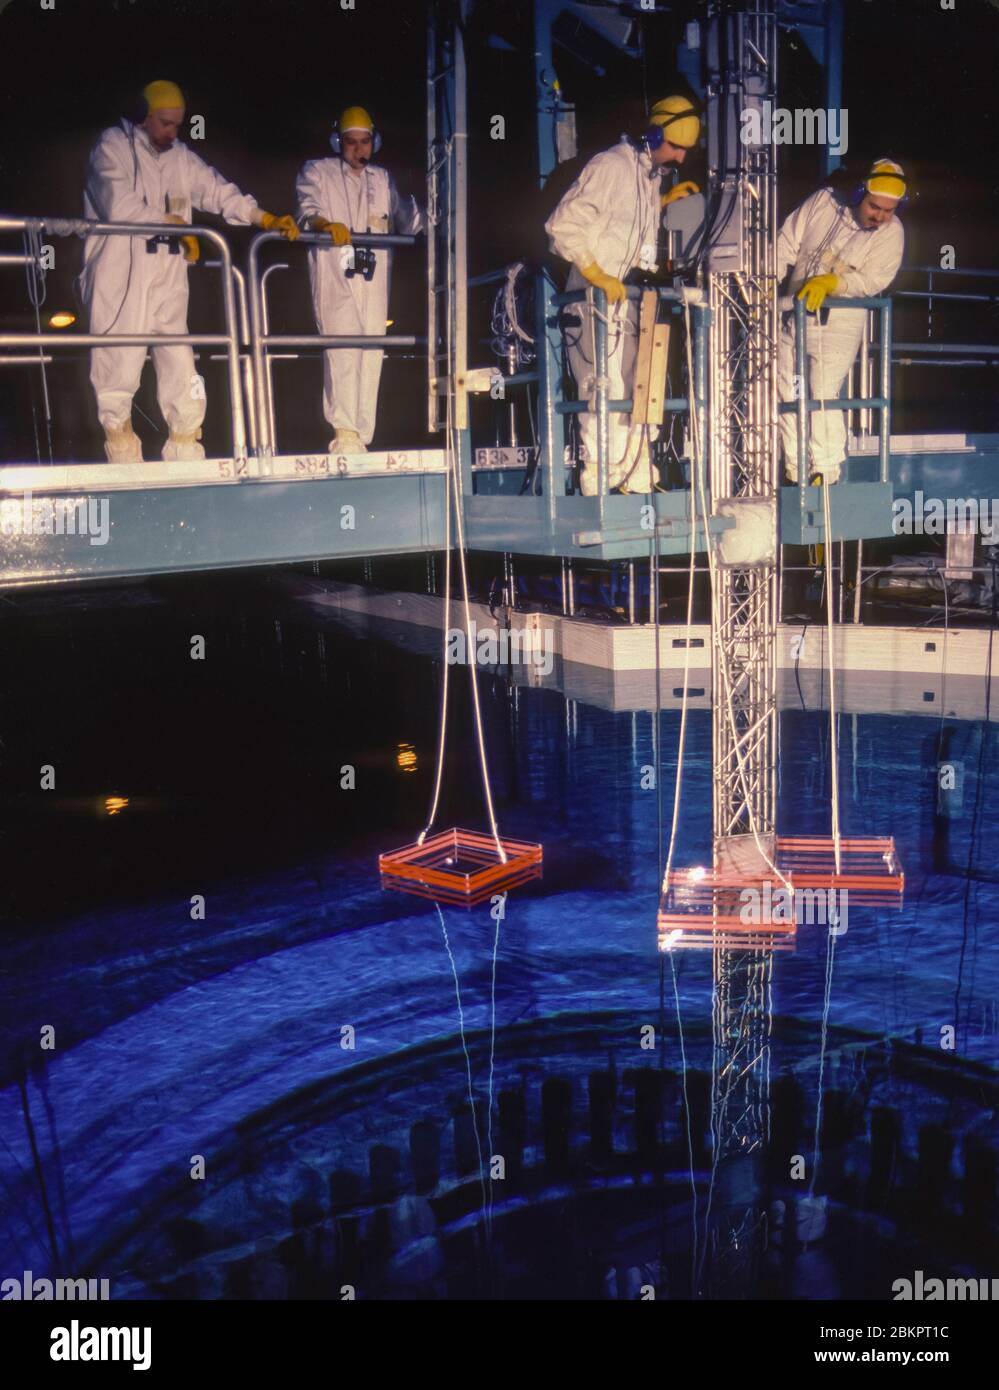 SCRIBA, NEW YORK, USA, 1985 - tecnici al lavoro durante il rifornimento del nucleo del reattore, presso la centrale nucleare Fitzpatrick, Nine Mile Point. Foto Stock